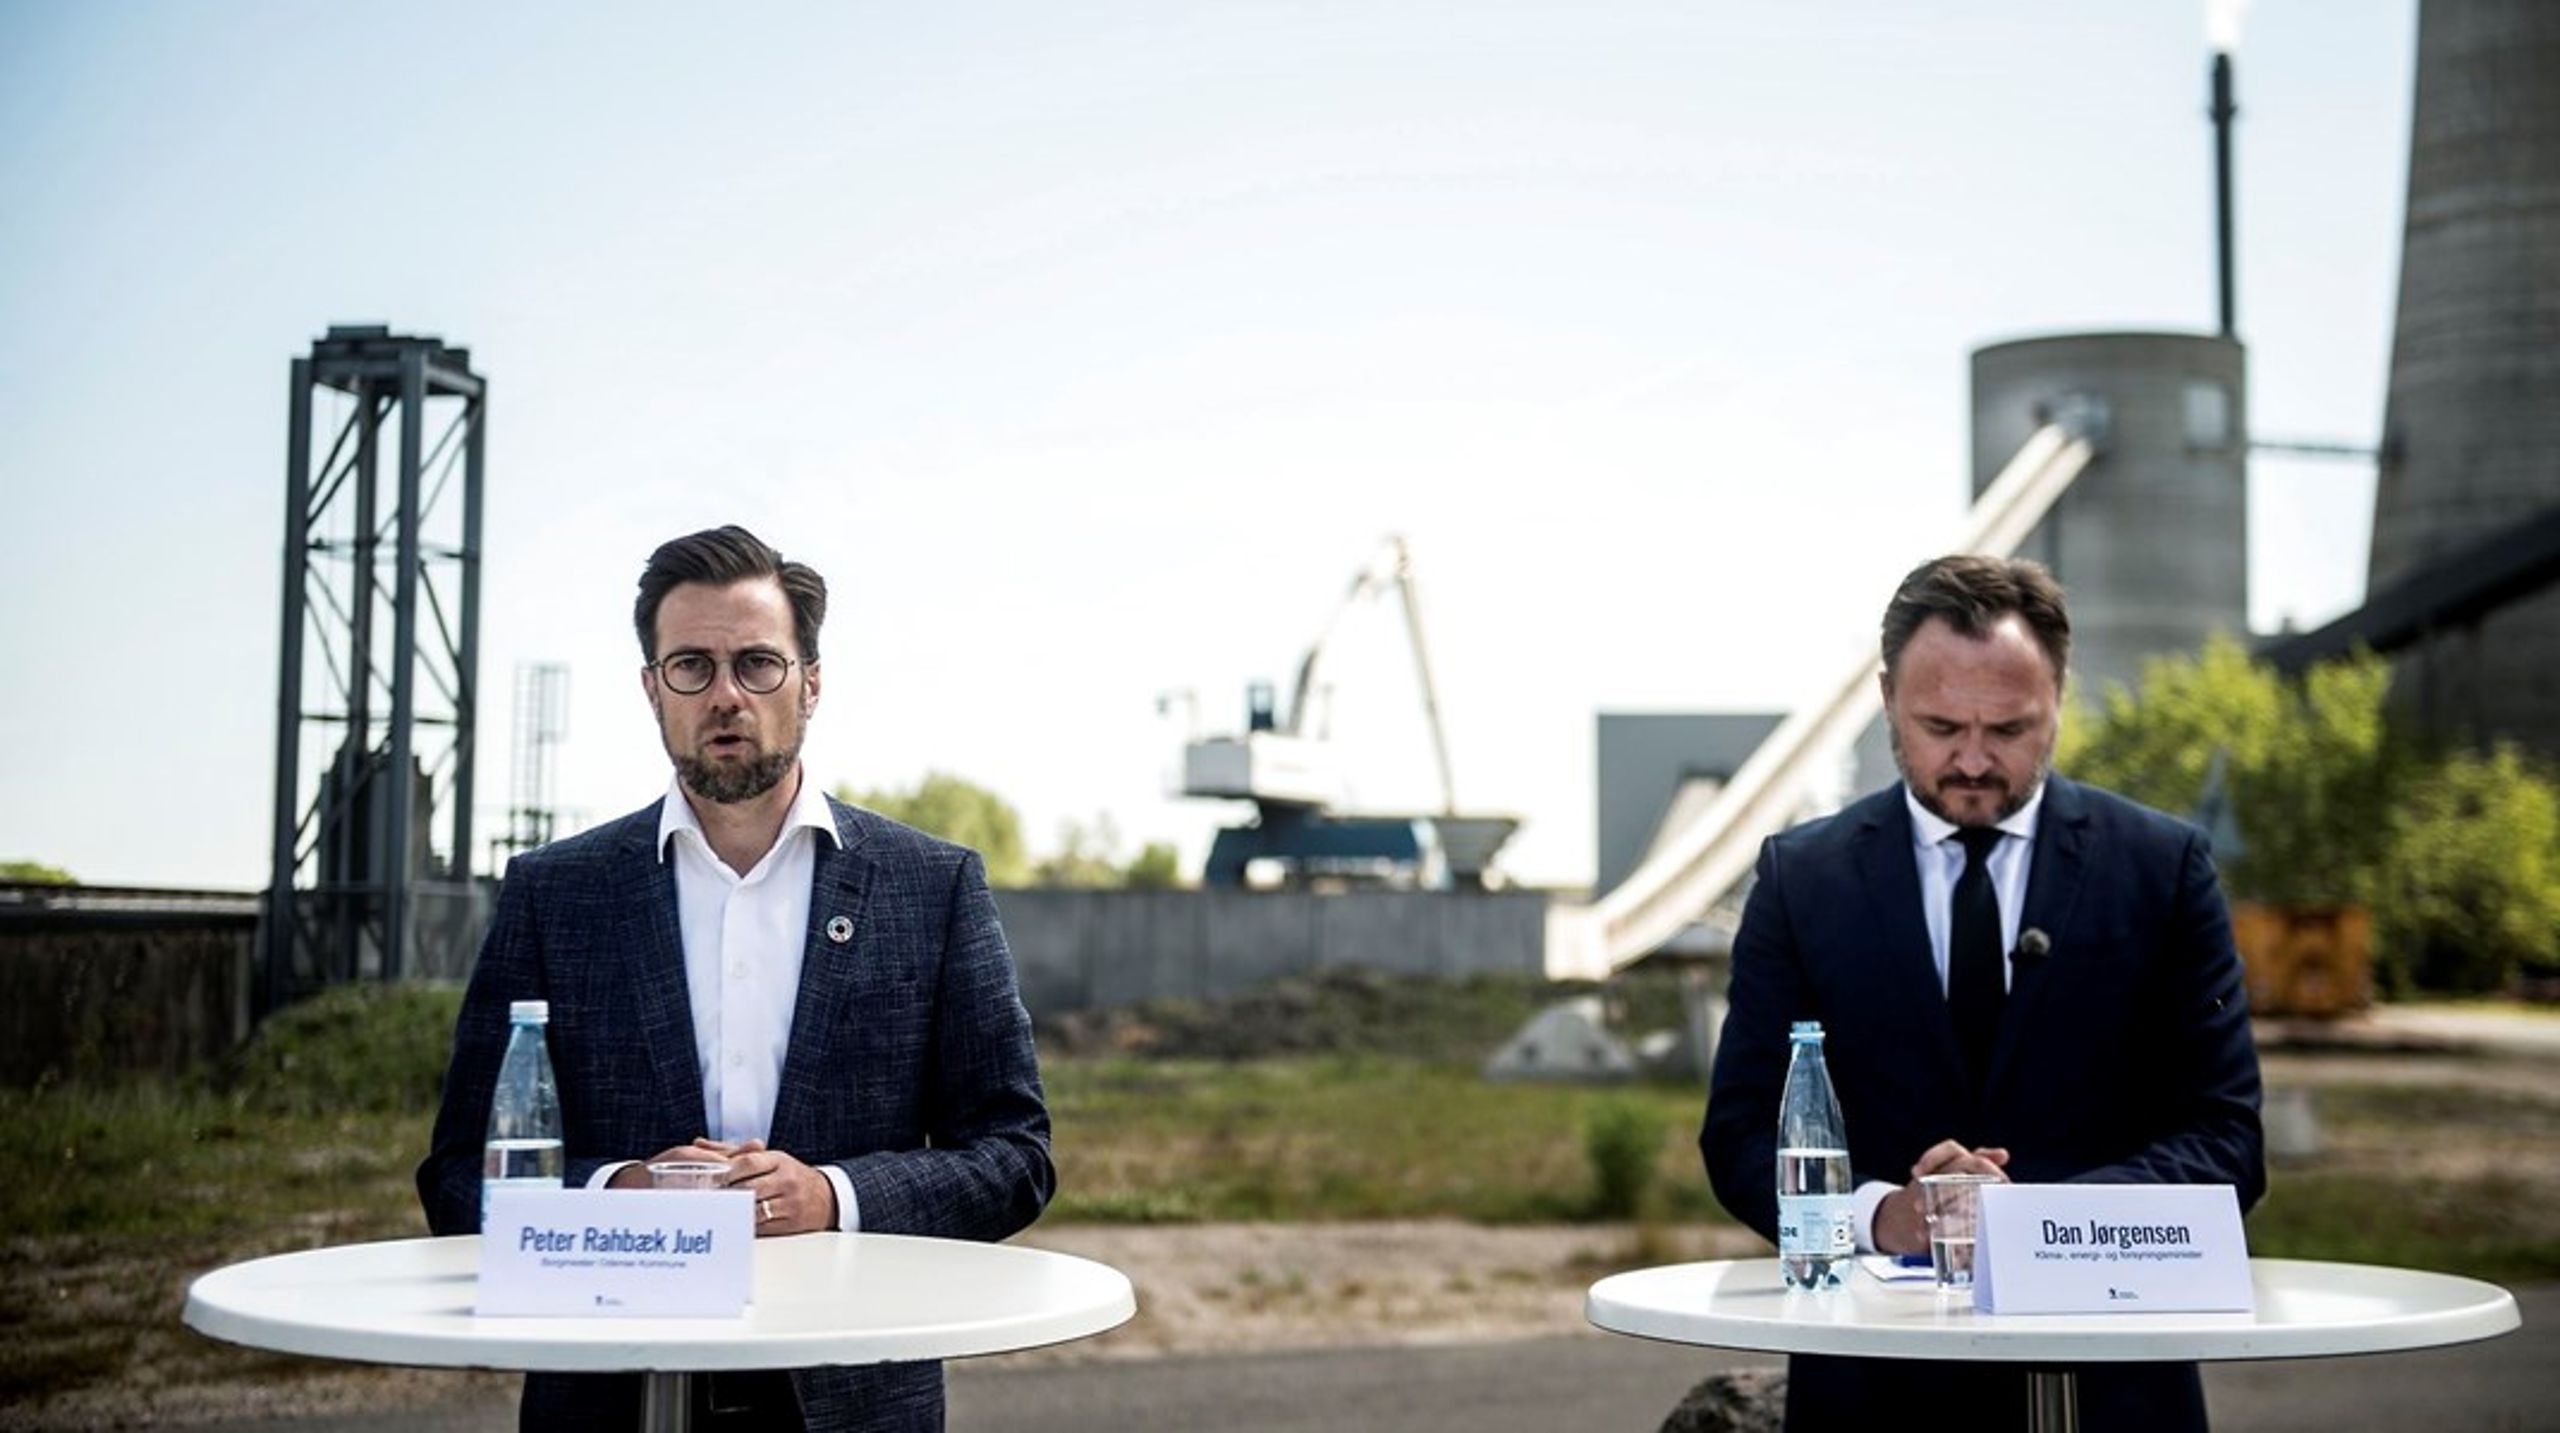 Odense-borgmester Peter Rahbæk Juel (S) og klimanister Dan Jørgensen (S) ved pressemøde i maj 2020, da det blev annonceret, at Fynsværket ville stoppe tre år tidligere end ventet med at fyre med kul.